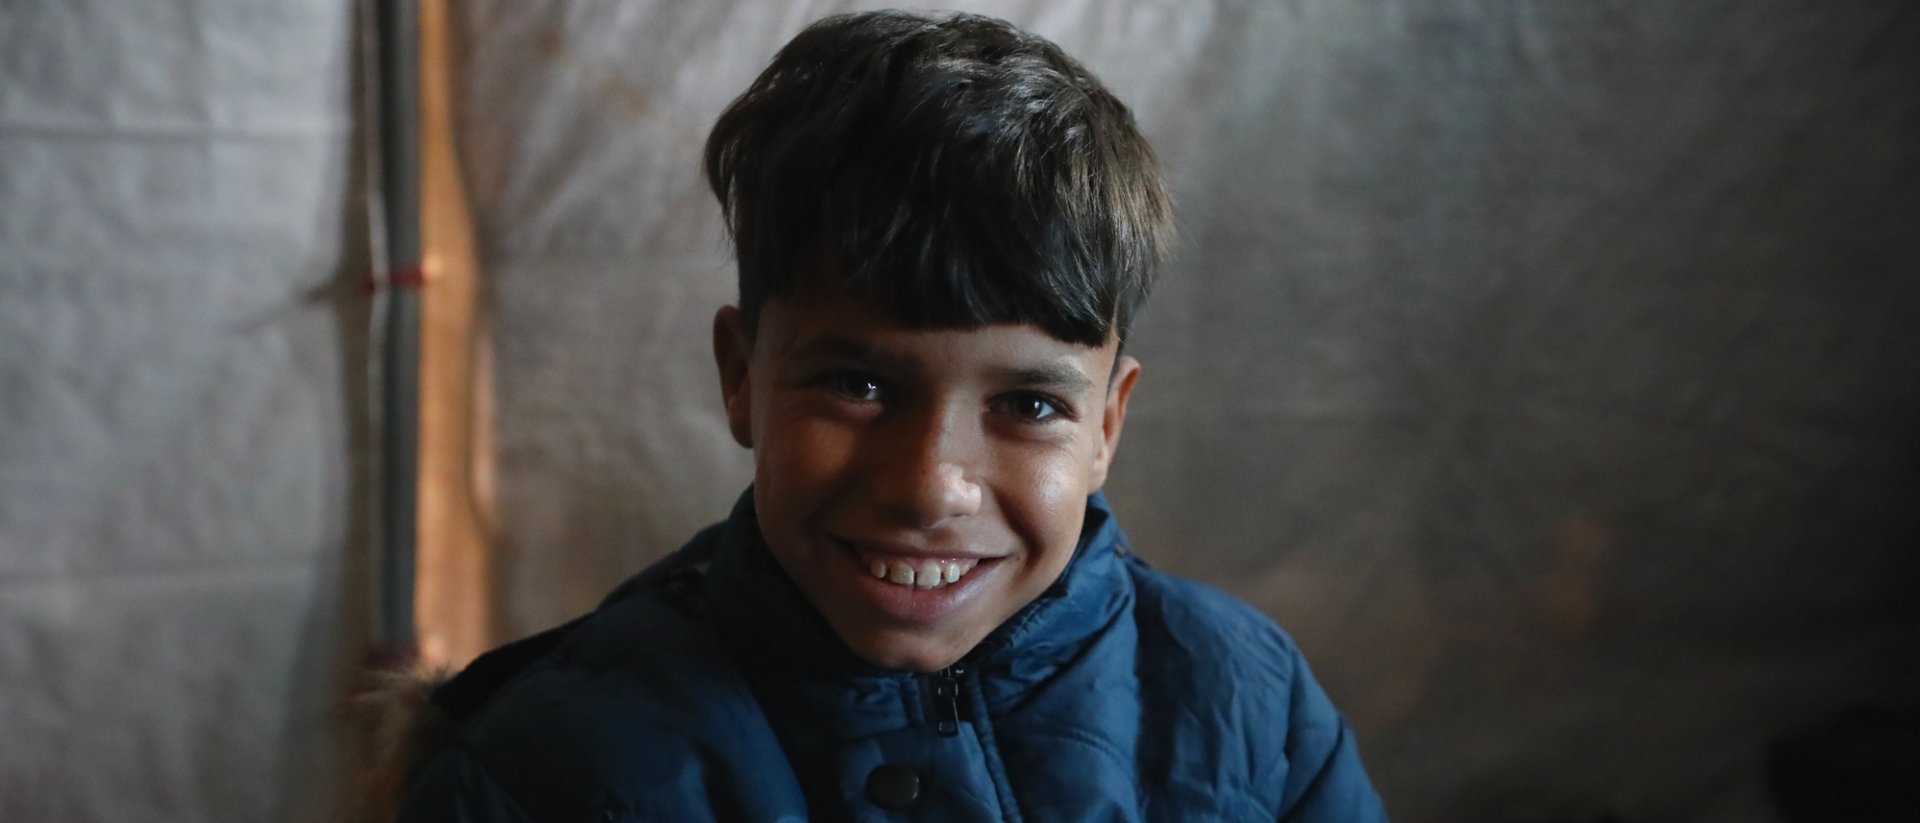 Bahjet, un niño sirio refugiado que ha recibido ayuda de Save the Children